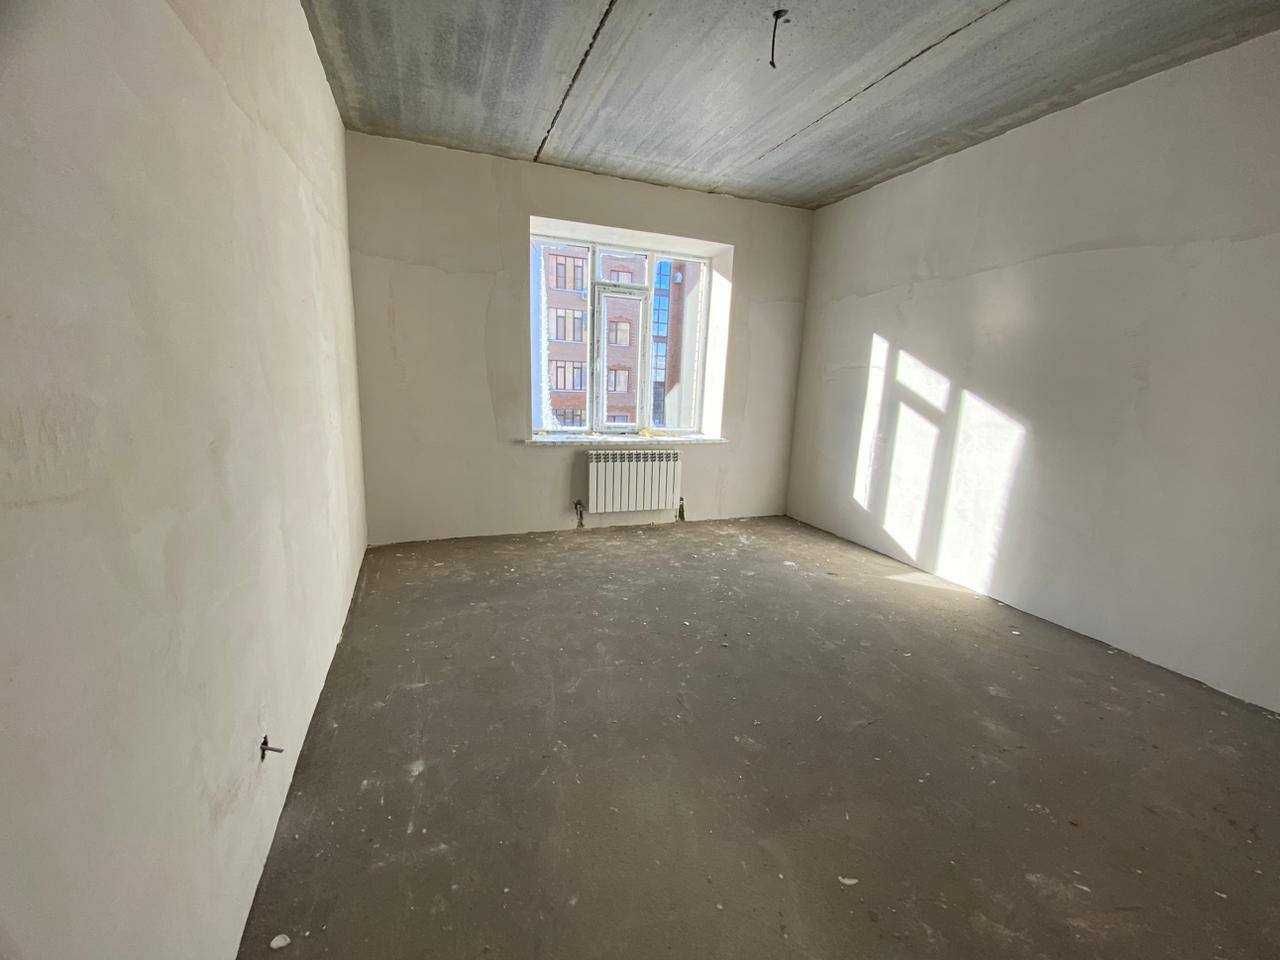 Продам 2-х комн квартиру в центре БАТЫС-2 в черновой отделке